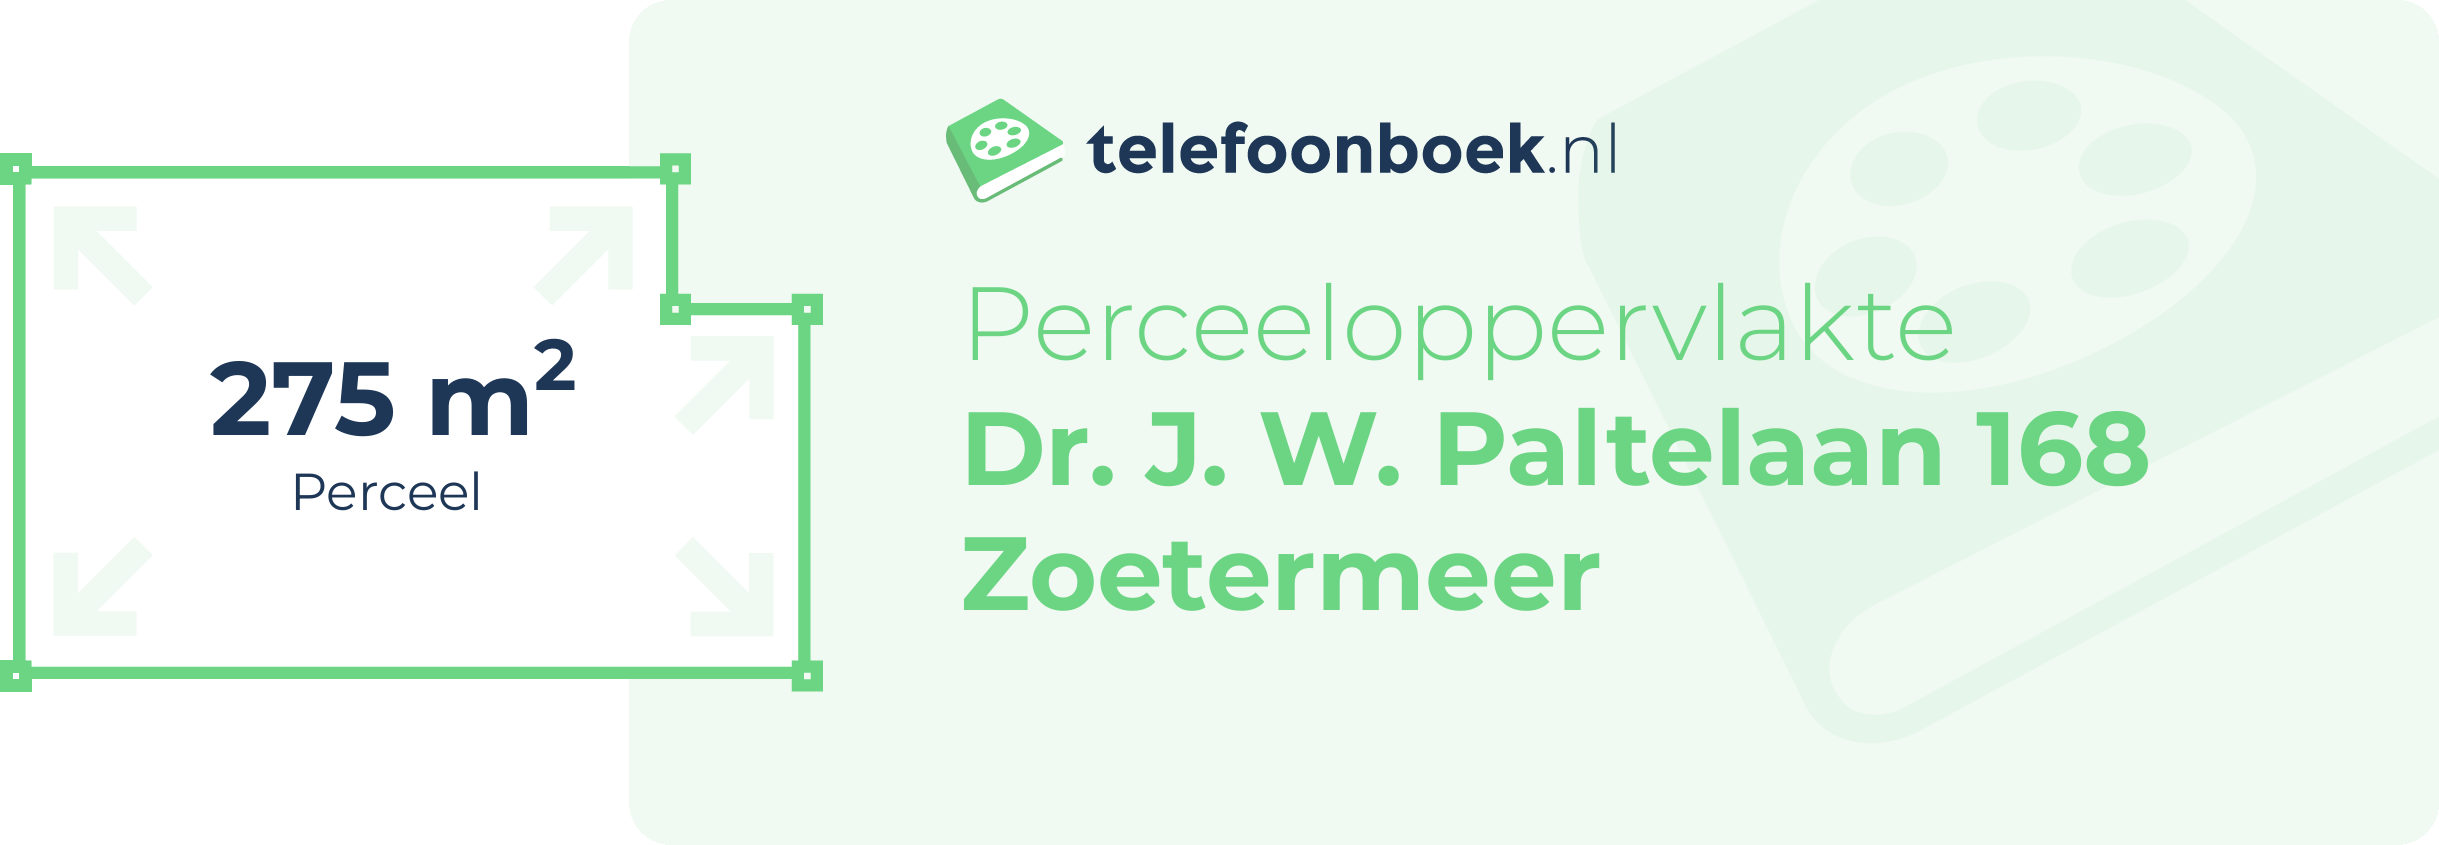 Perceeloppervlakte Dr. J. W. Paltelaan 168 Zoetermeer